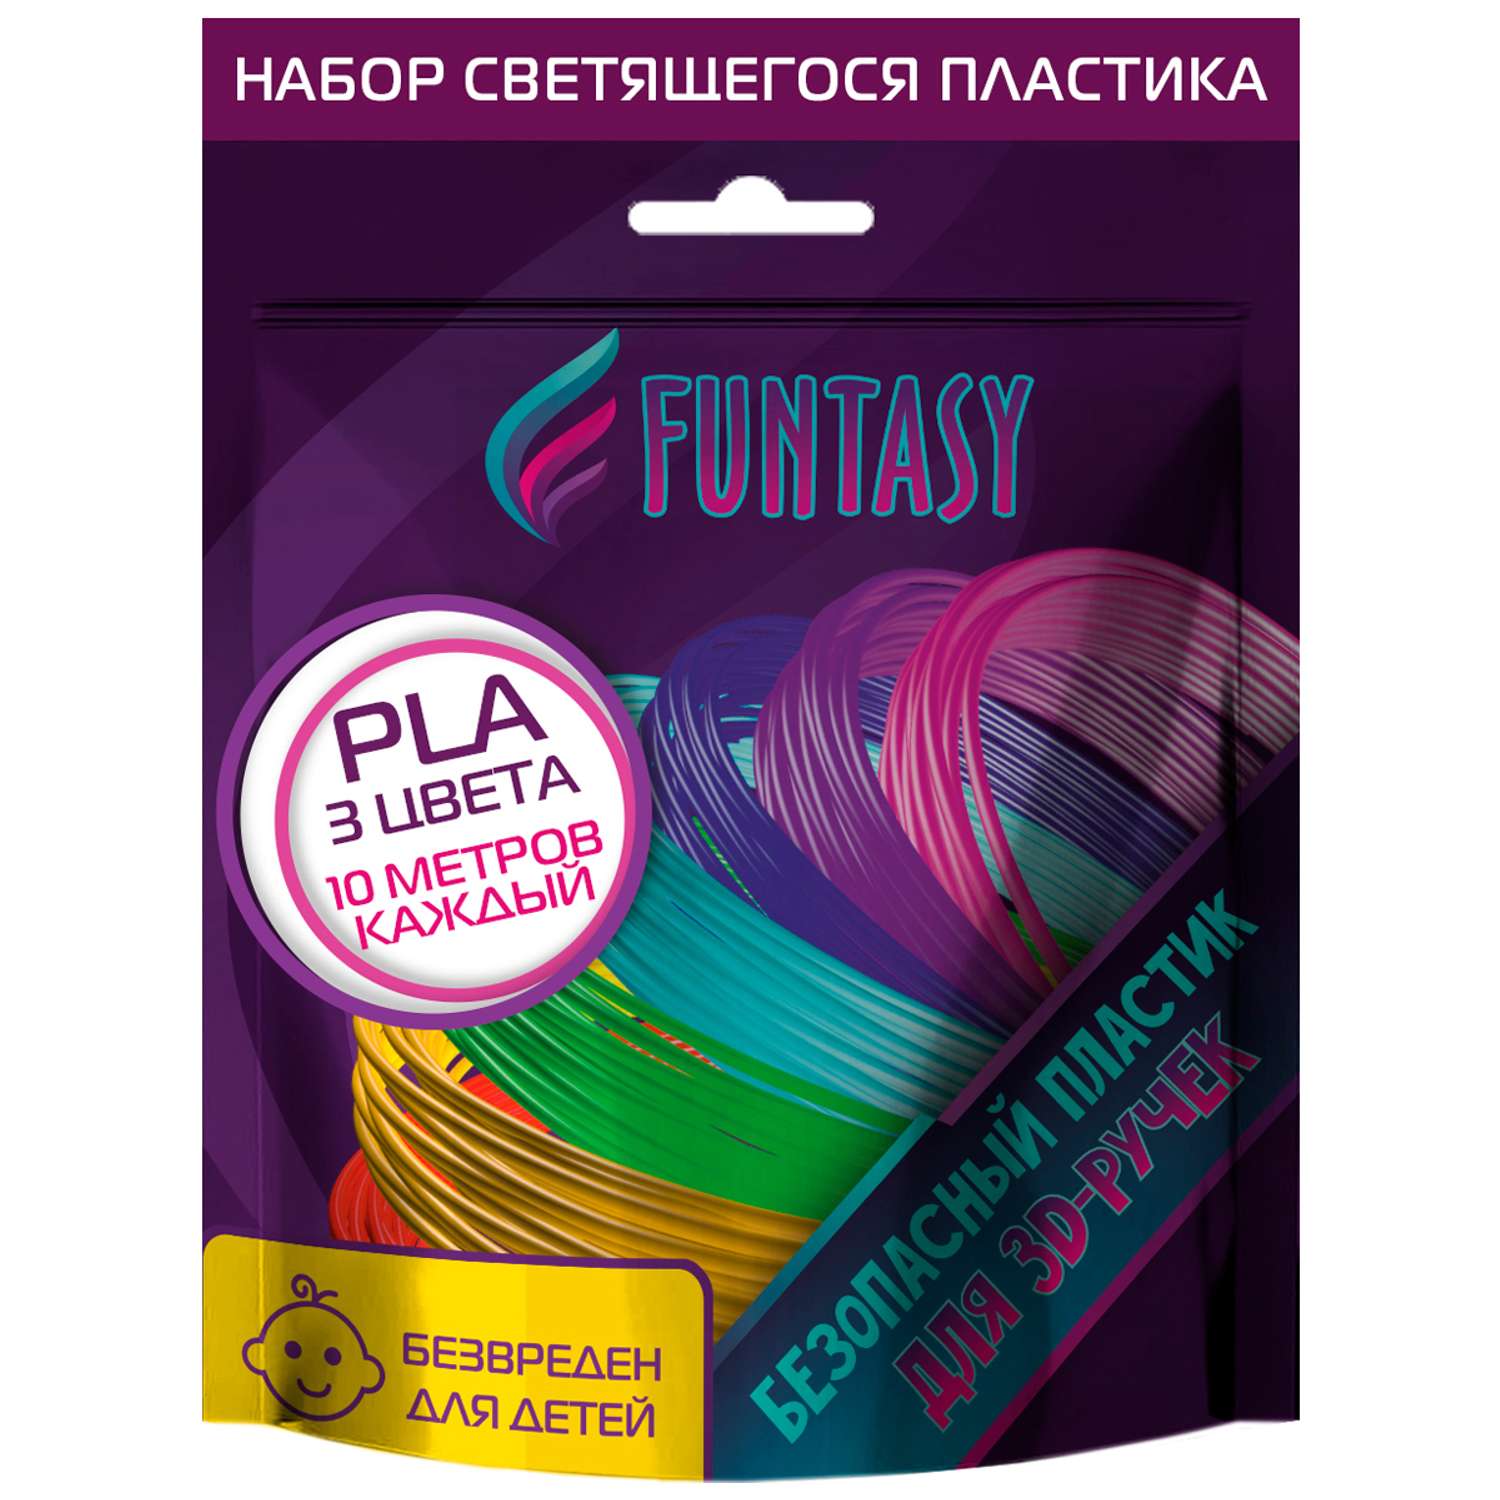 Набор светящегося PLA-пластика Funtasy 3 цвета по 10 метров - фото 9